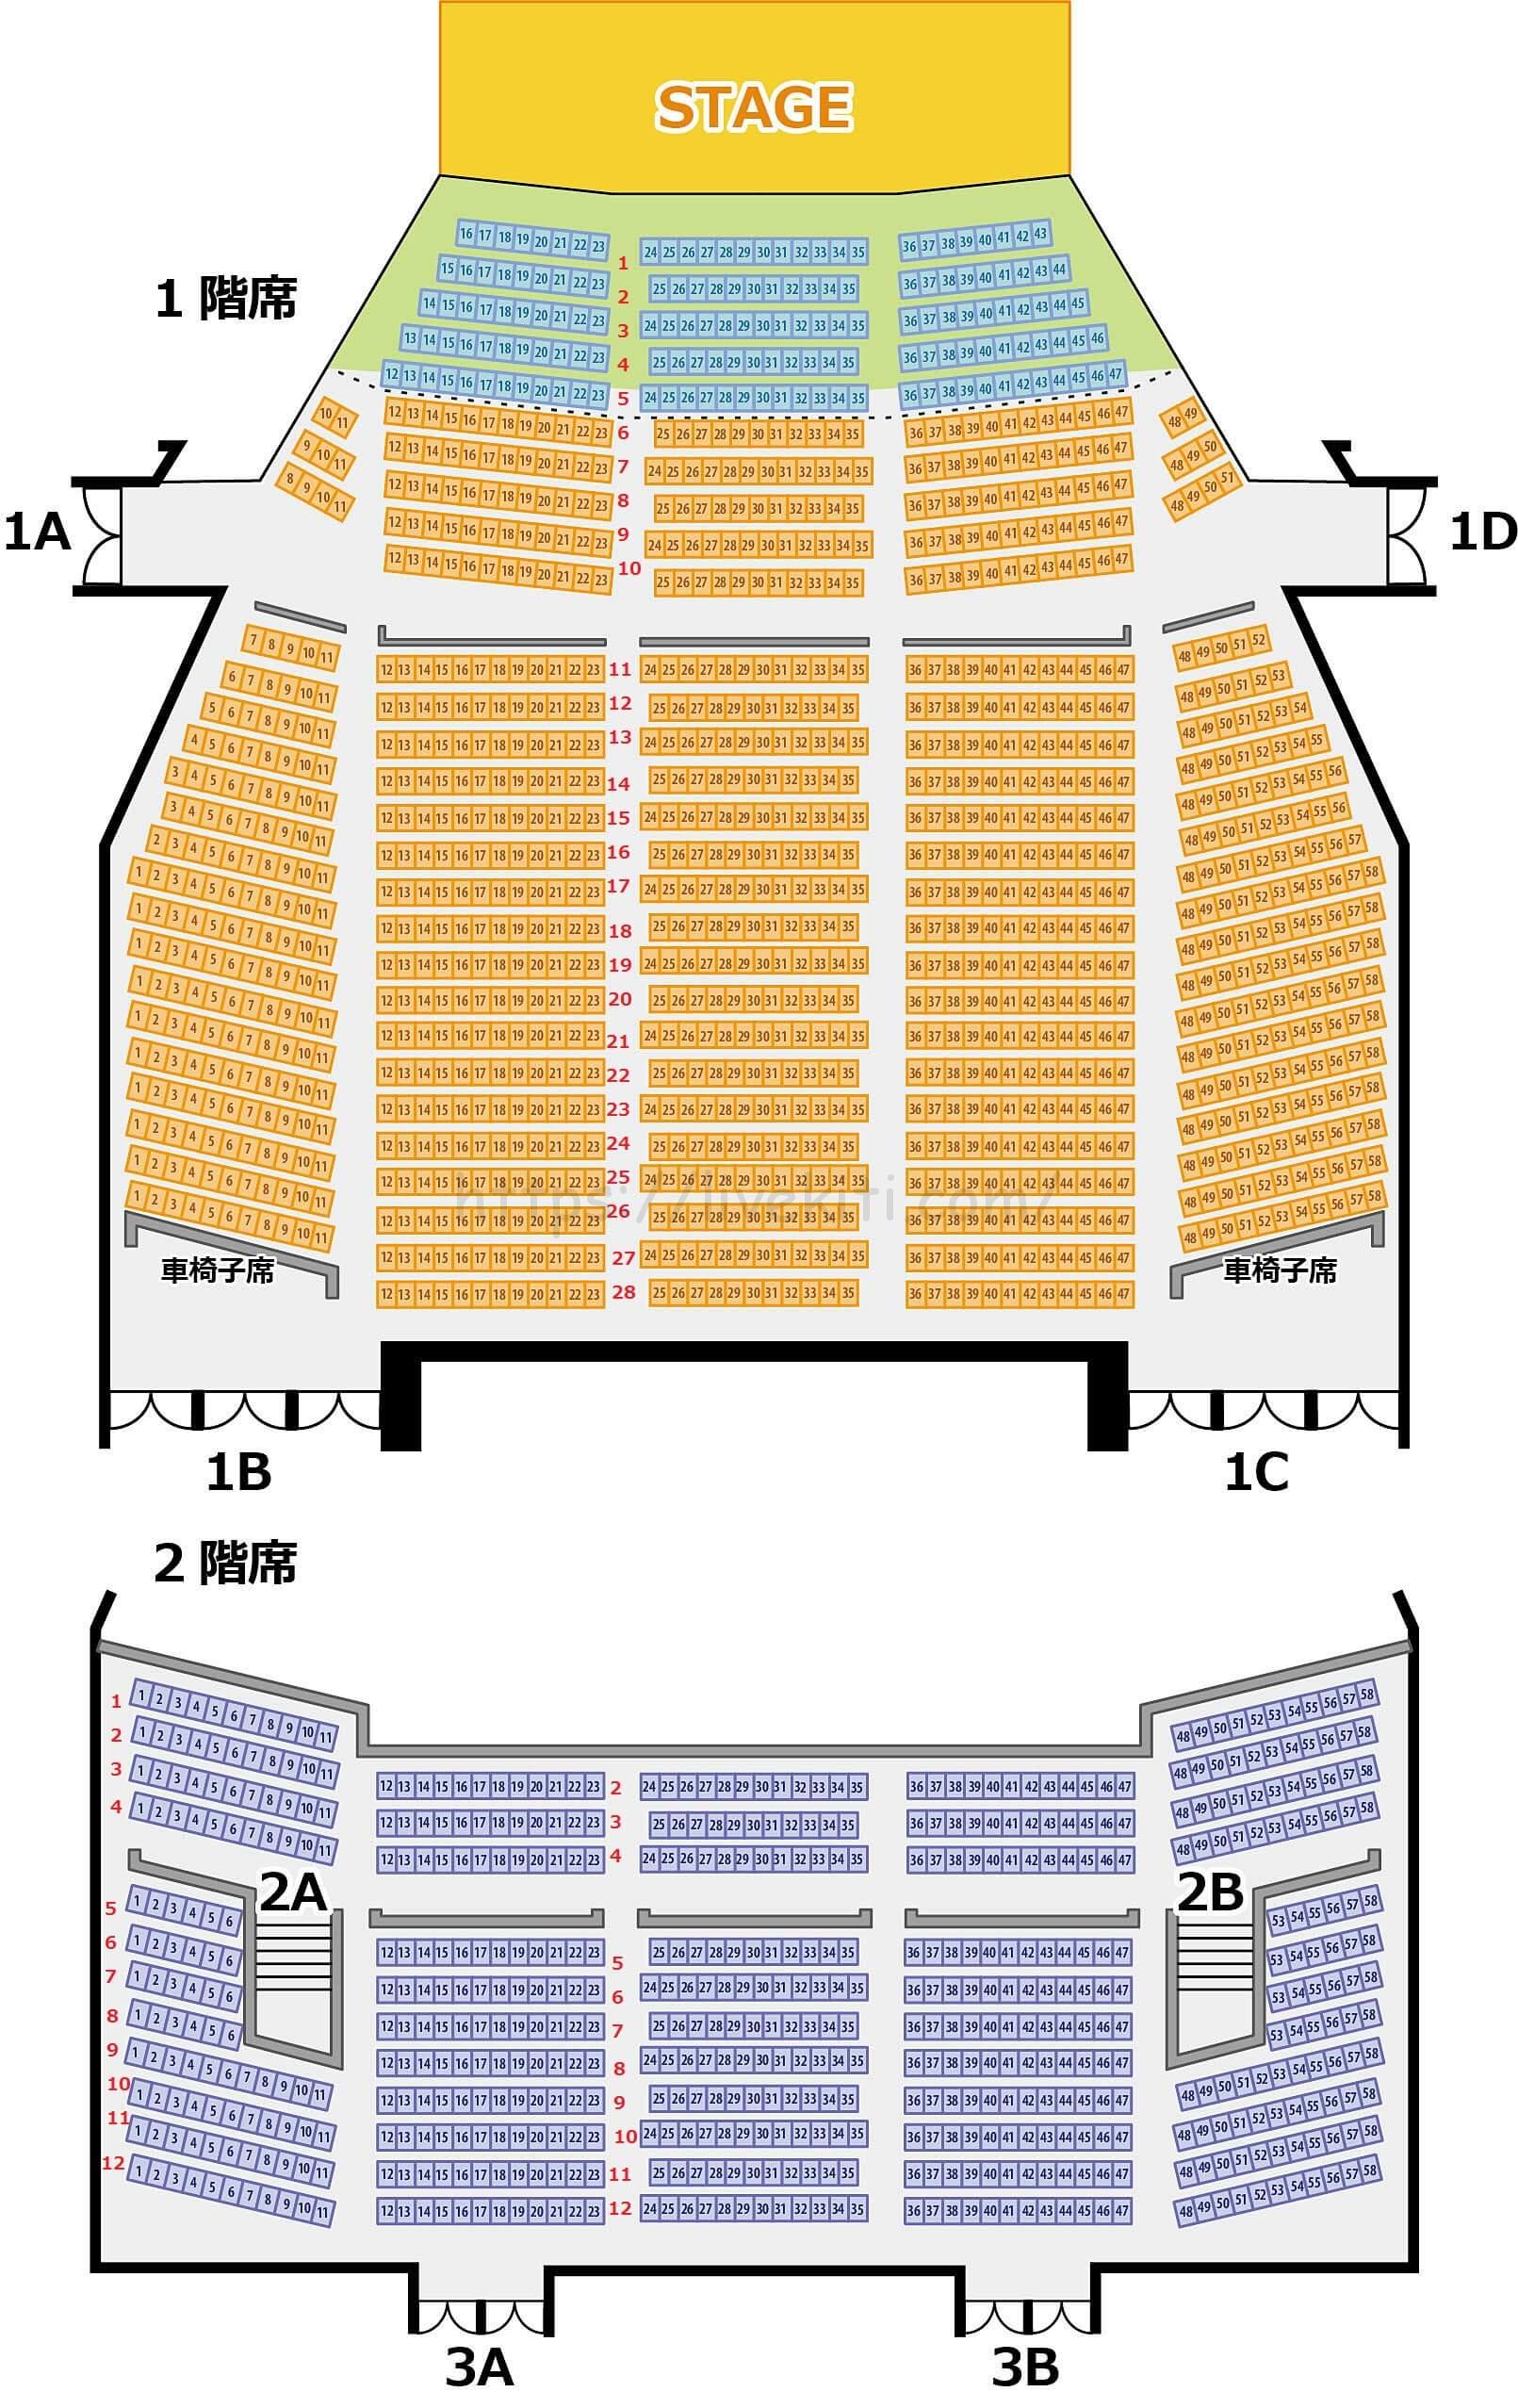 市川市文化会館 座席表とステージの見え方